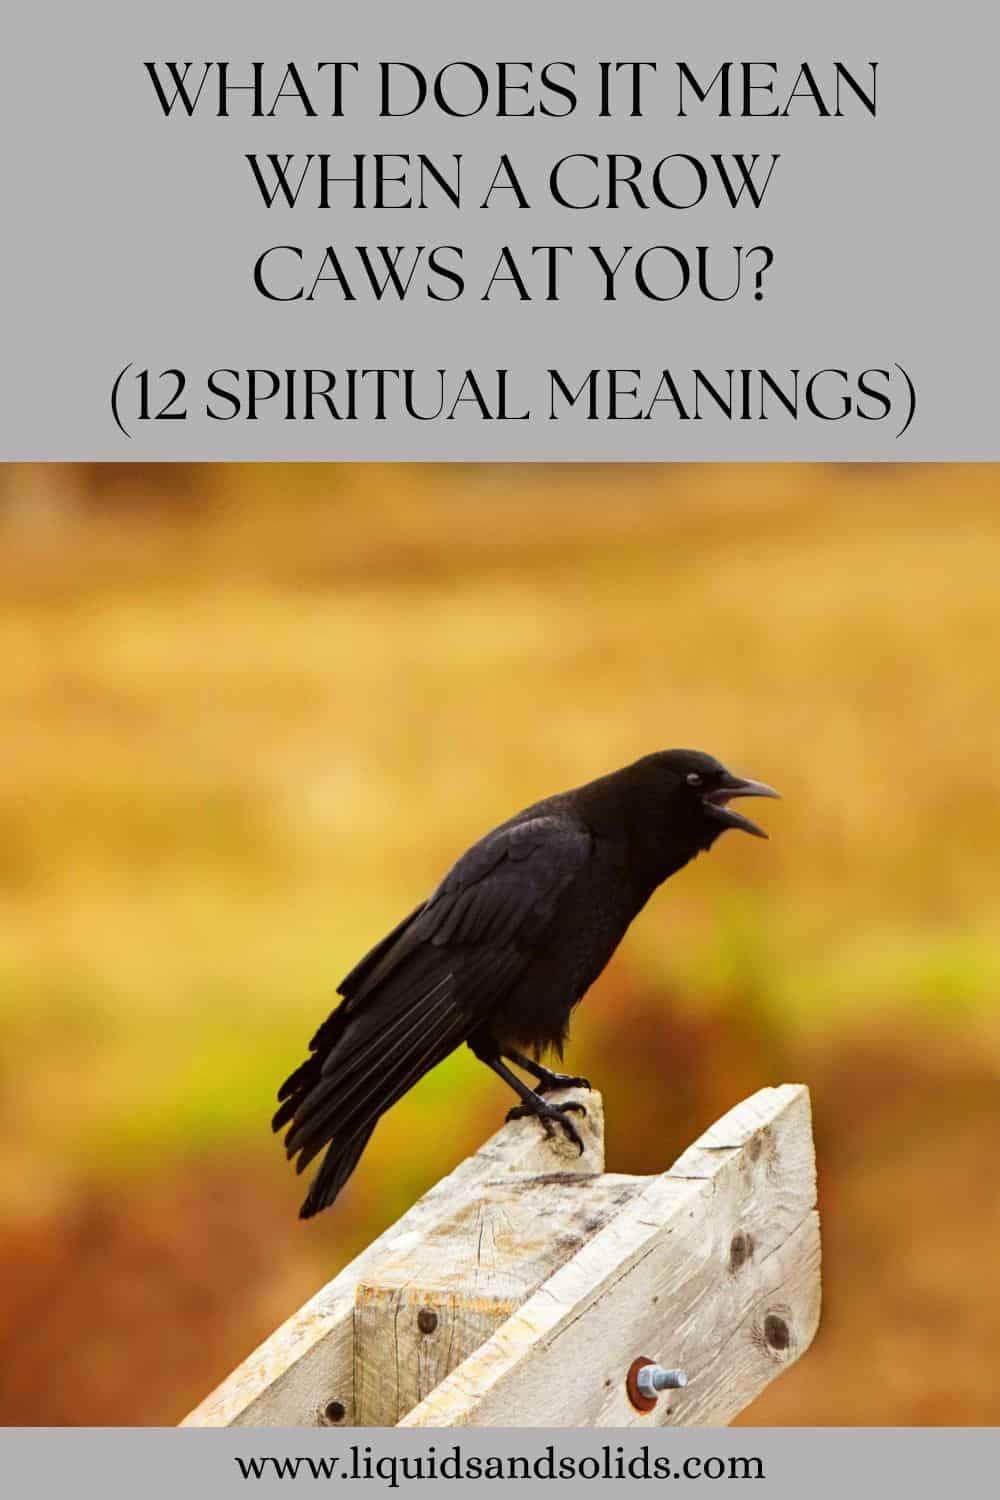  ມັນ ໝາຍ ຄວາມວ່າແນວໃດເມື່ອ Crow Caws ໃສ່ເຈົ້າ? (12 ຄວາມ​ຫມາຍ​ທາງ​ວິນ​ຍານ​)